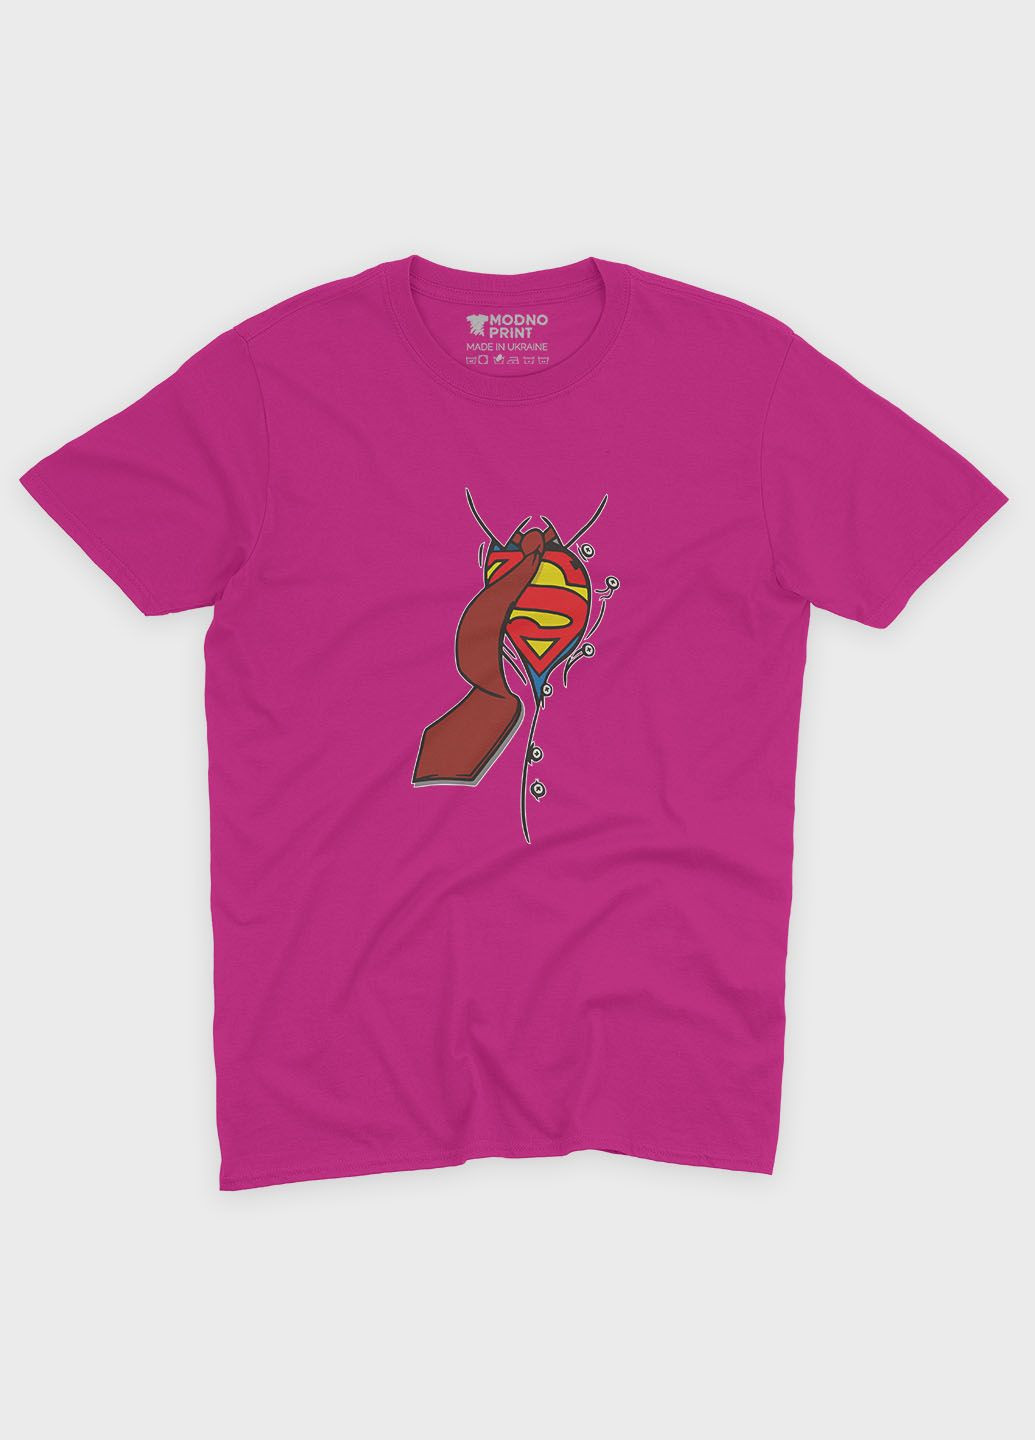 Рожева демісезонна футболка для дівчинки з принтом супергероя - супермен (ts001-1-fuxj-006-009-002-g) Modno